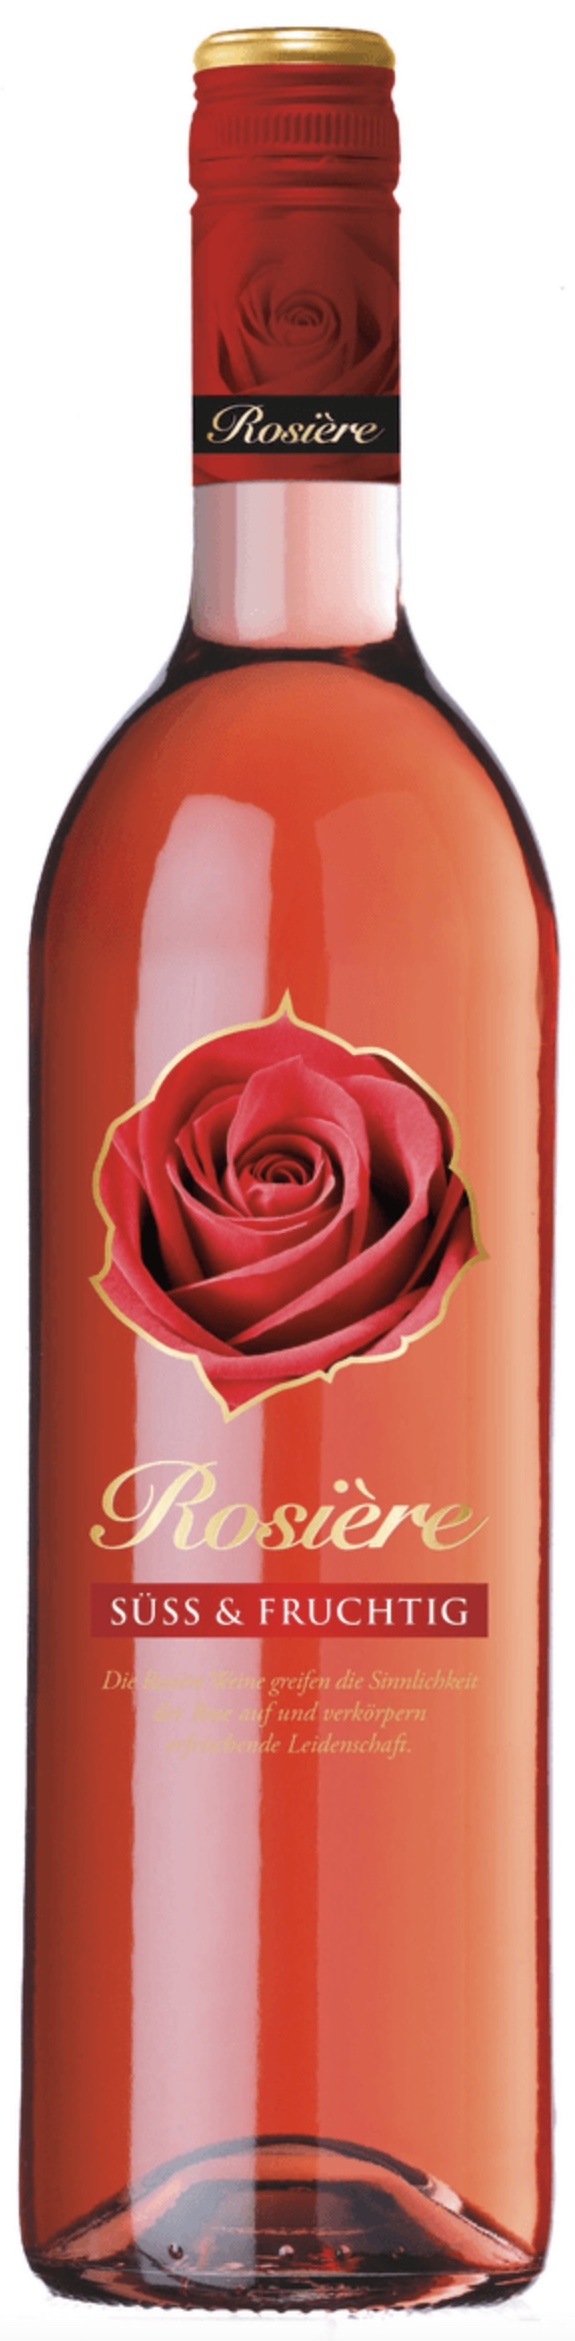 Rosiere Rosé süss und fruchtig 8,5% vol. 0,75L